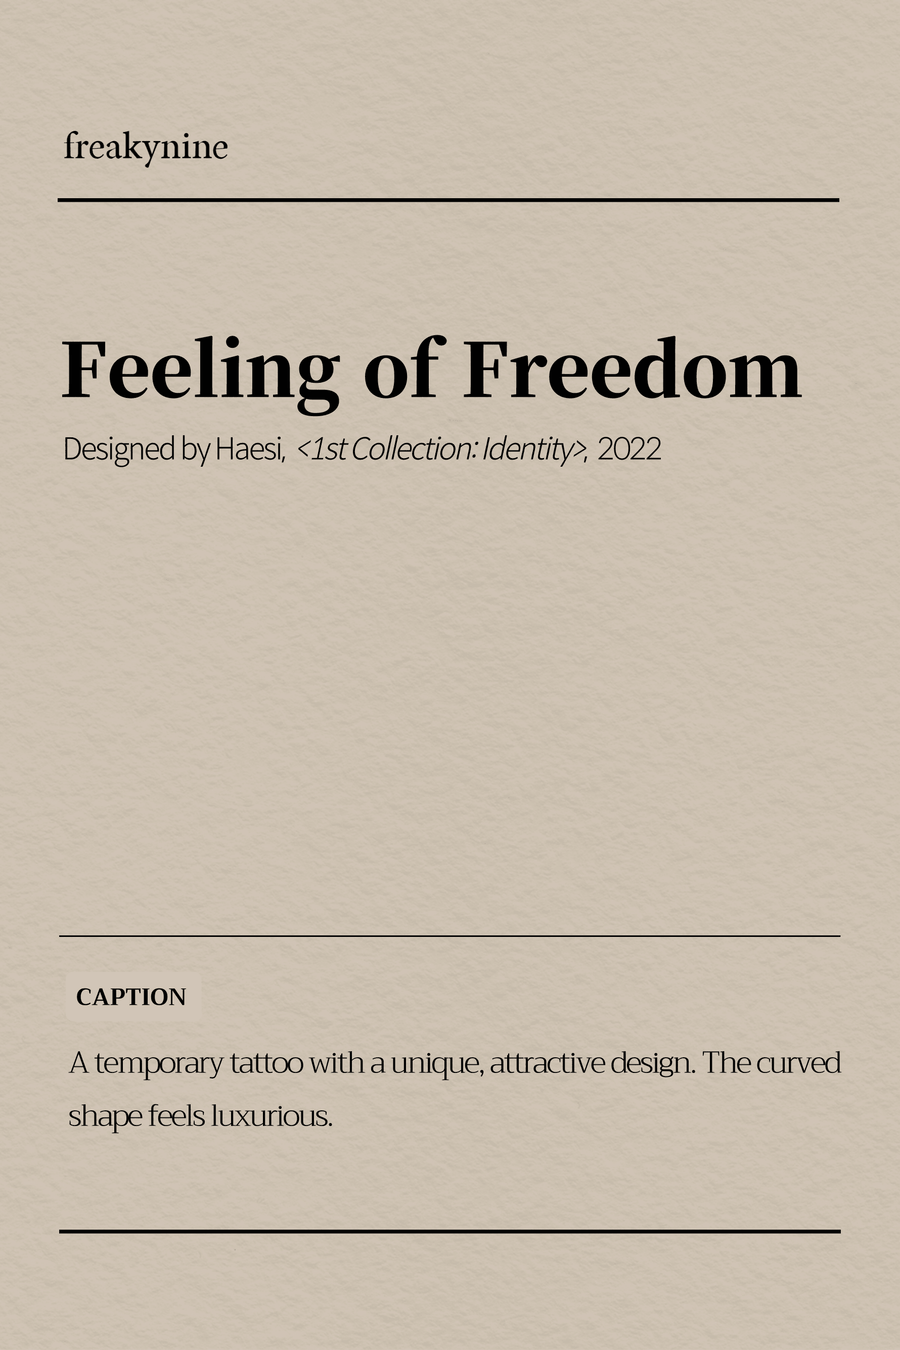 (Haesi) Feeling of Freedom (2EA) - freakynine